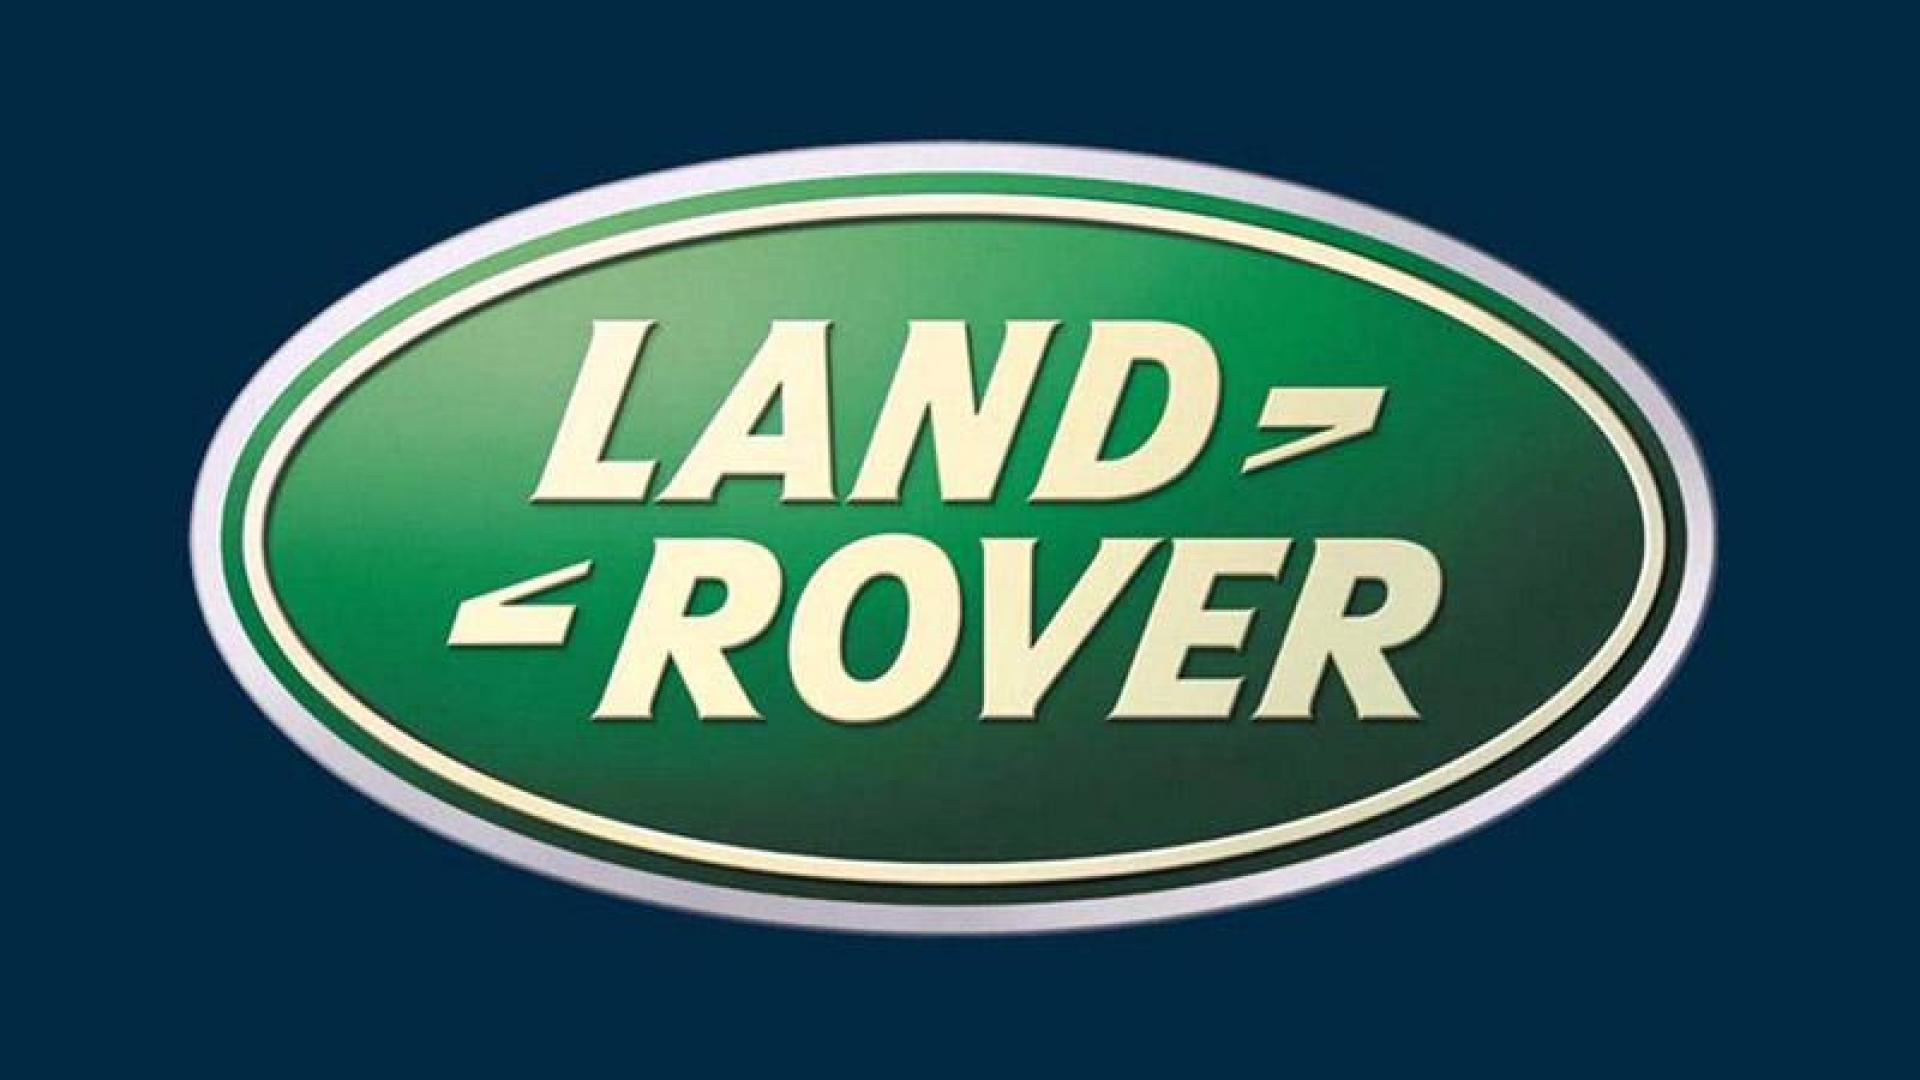 range rover logo